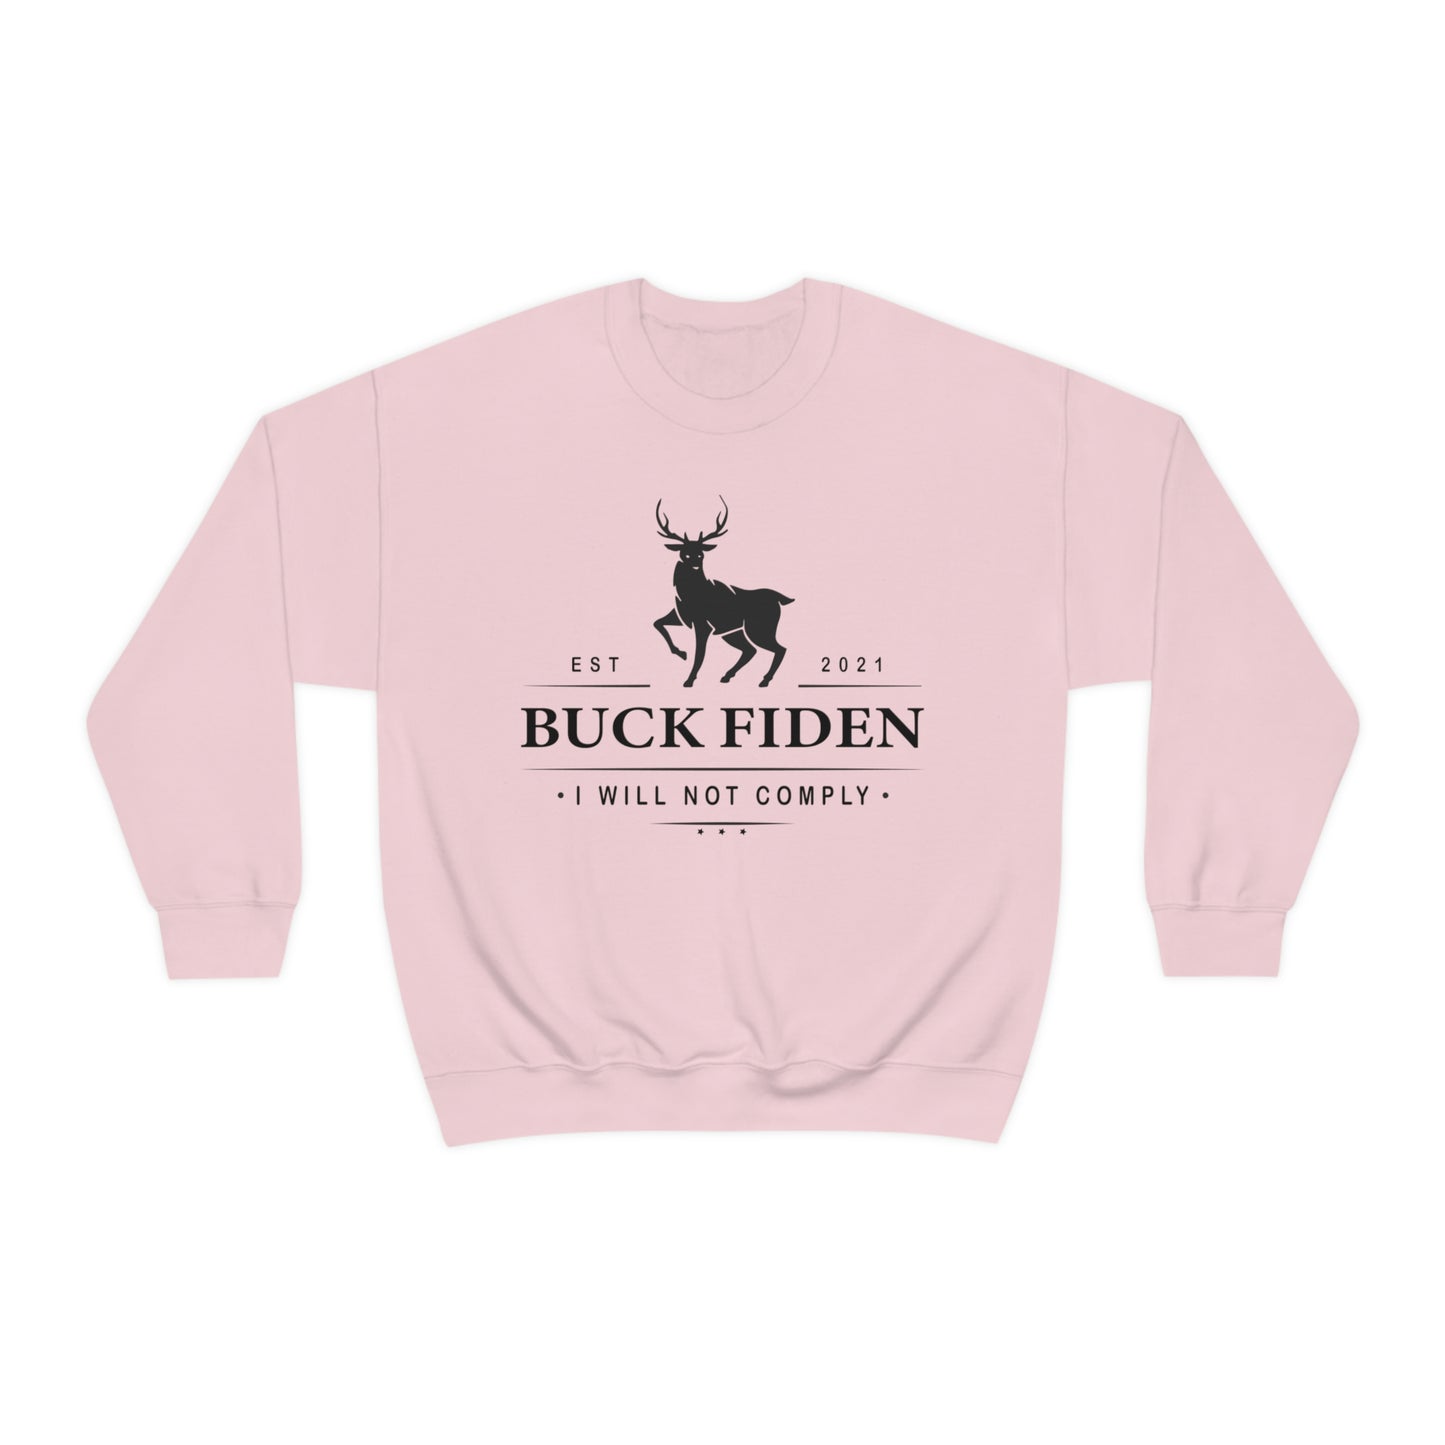 I Will Not Comply Sweatshirt, Buck Fiden Shirt